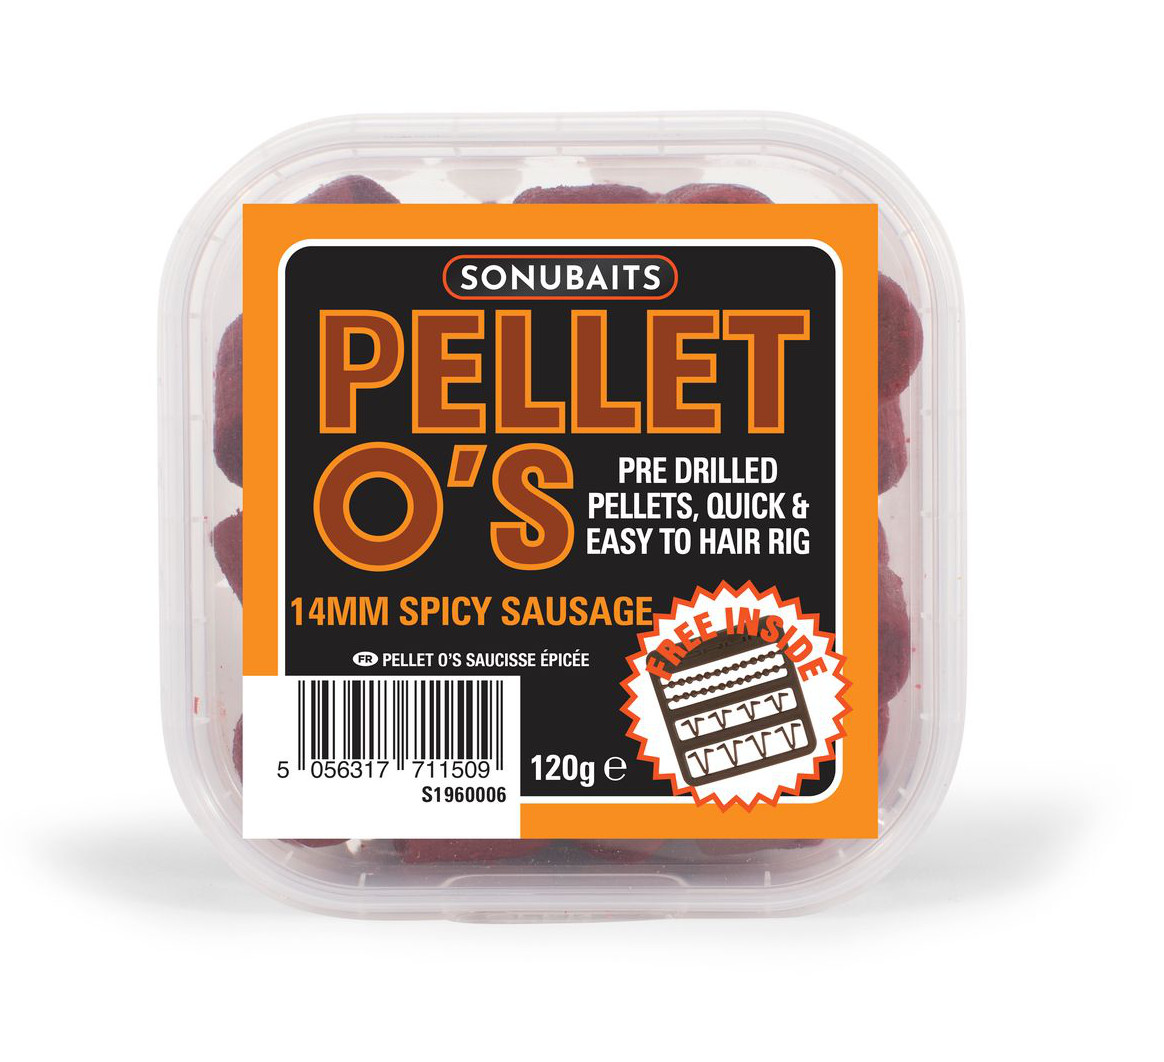 Sonubaits Pellet O's - Spicy Sausage